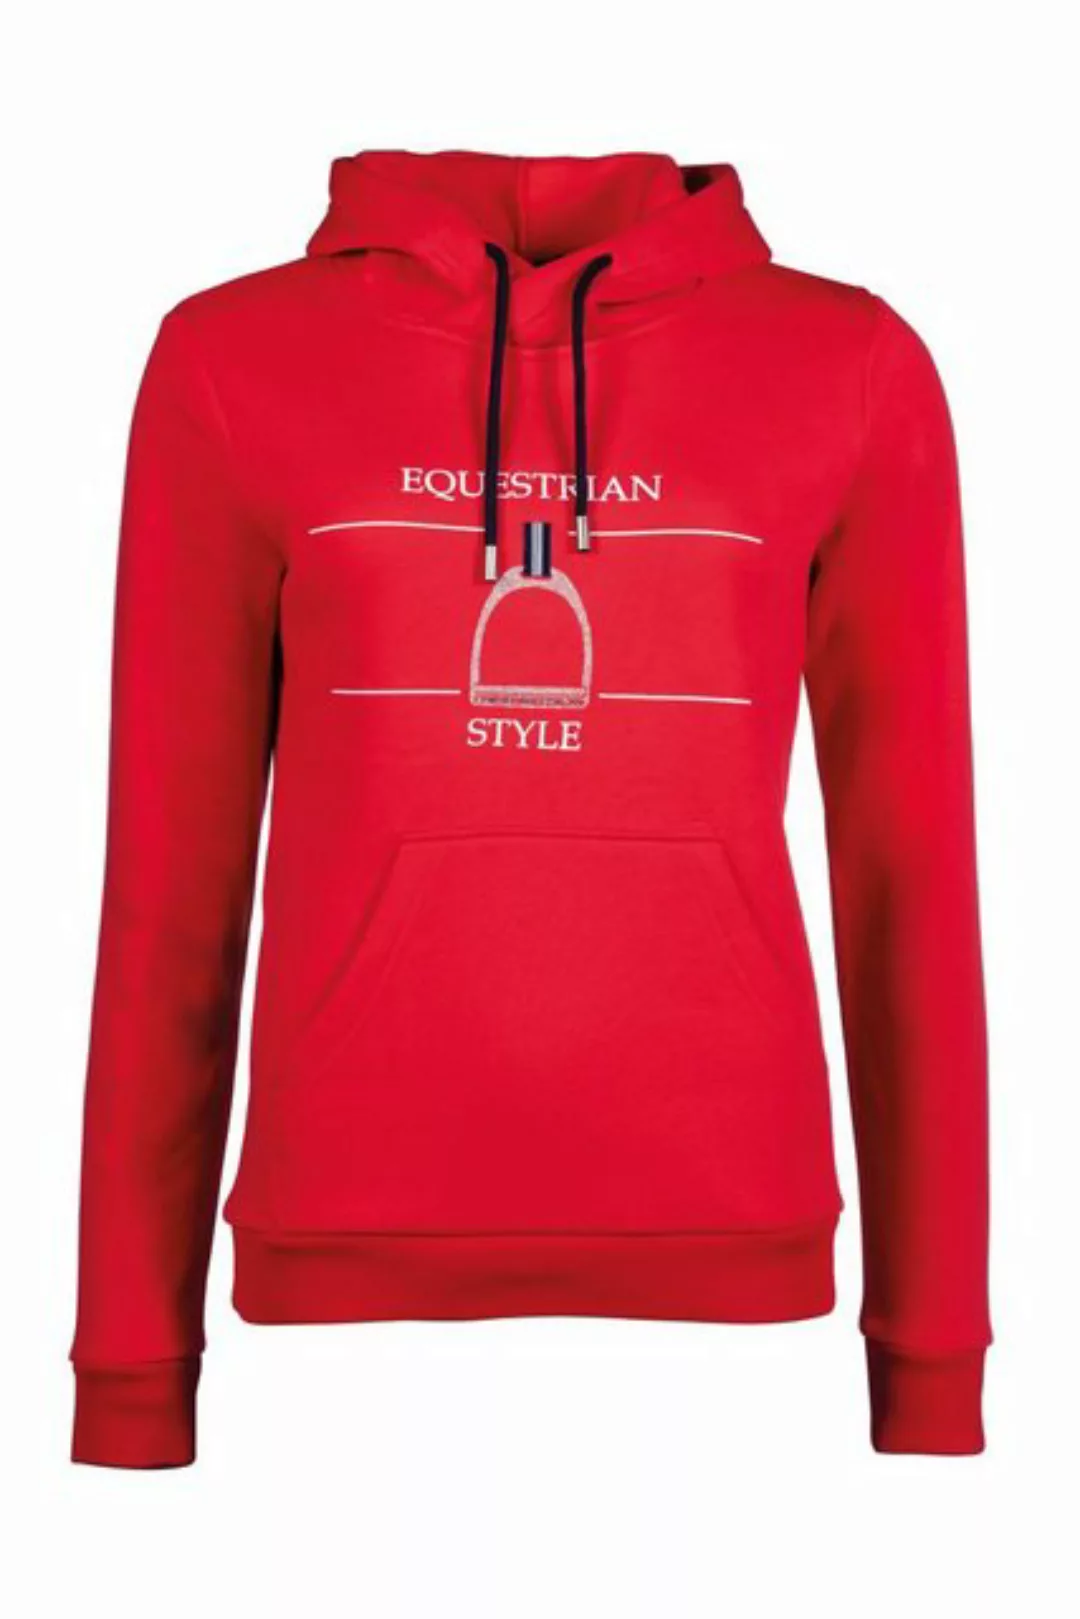 HKM Sweater Hoody -Equine Sports- Style günstig online kaufen